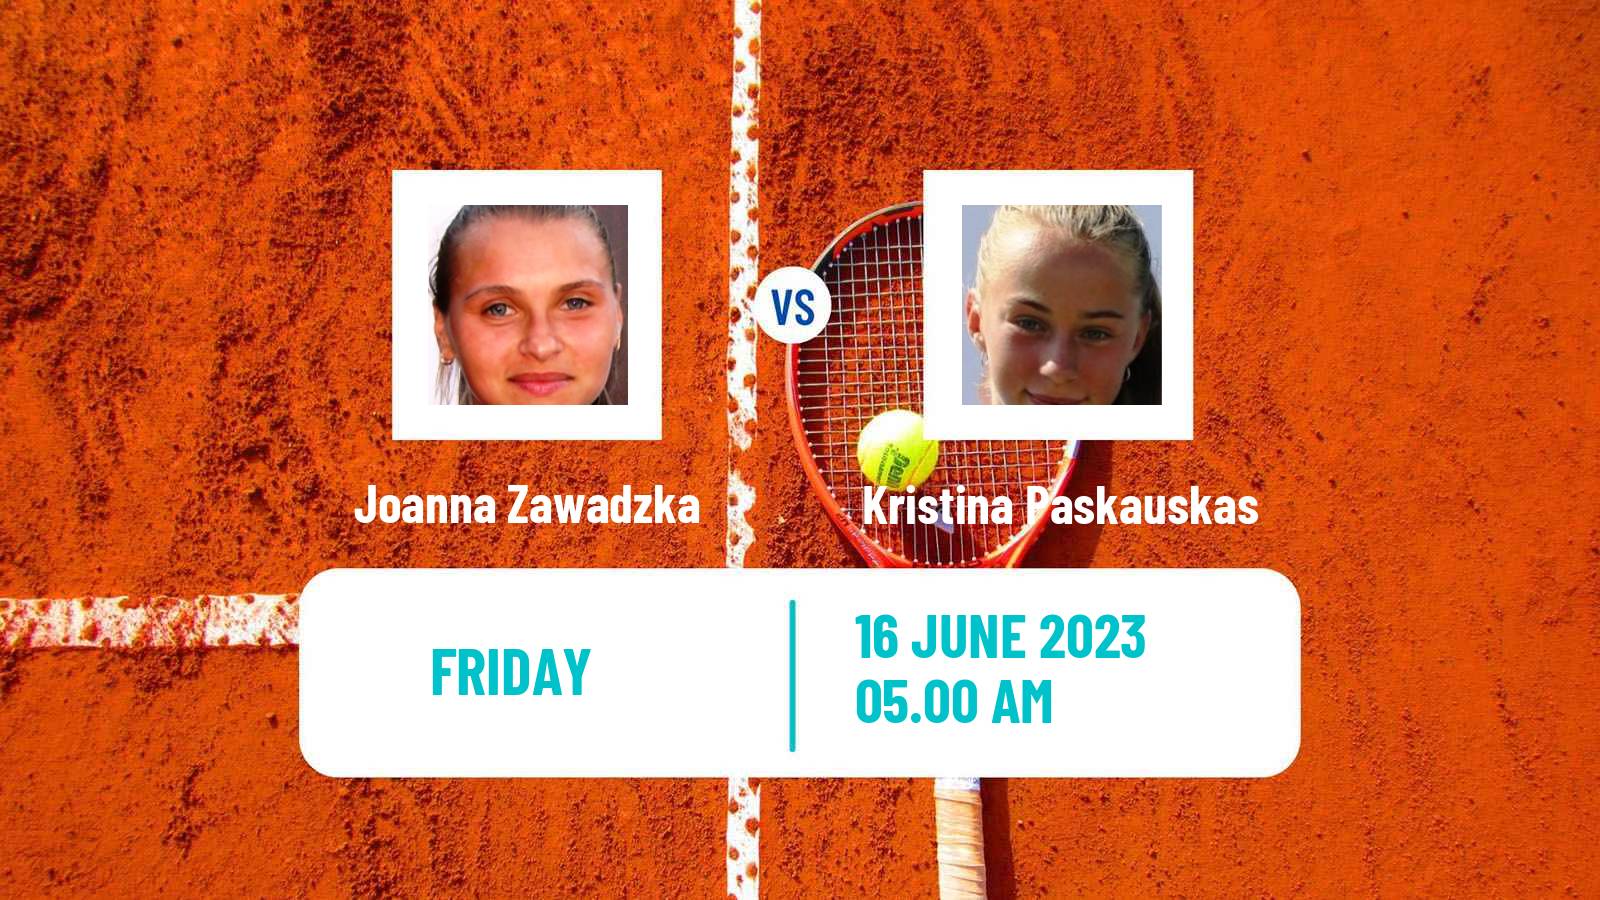 Tennis ITF W15 Monastir 19 Women Joanna Zawadzka - Kristina Paskauskas